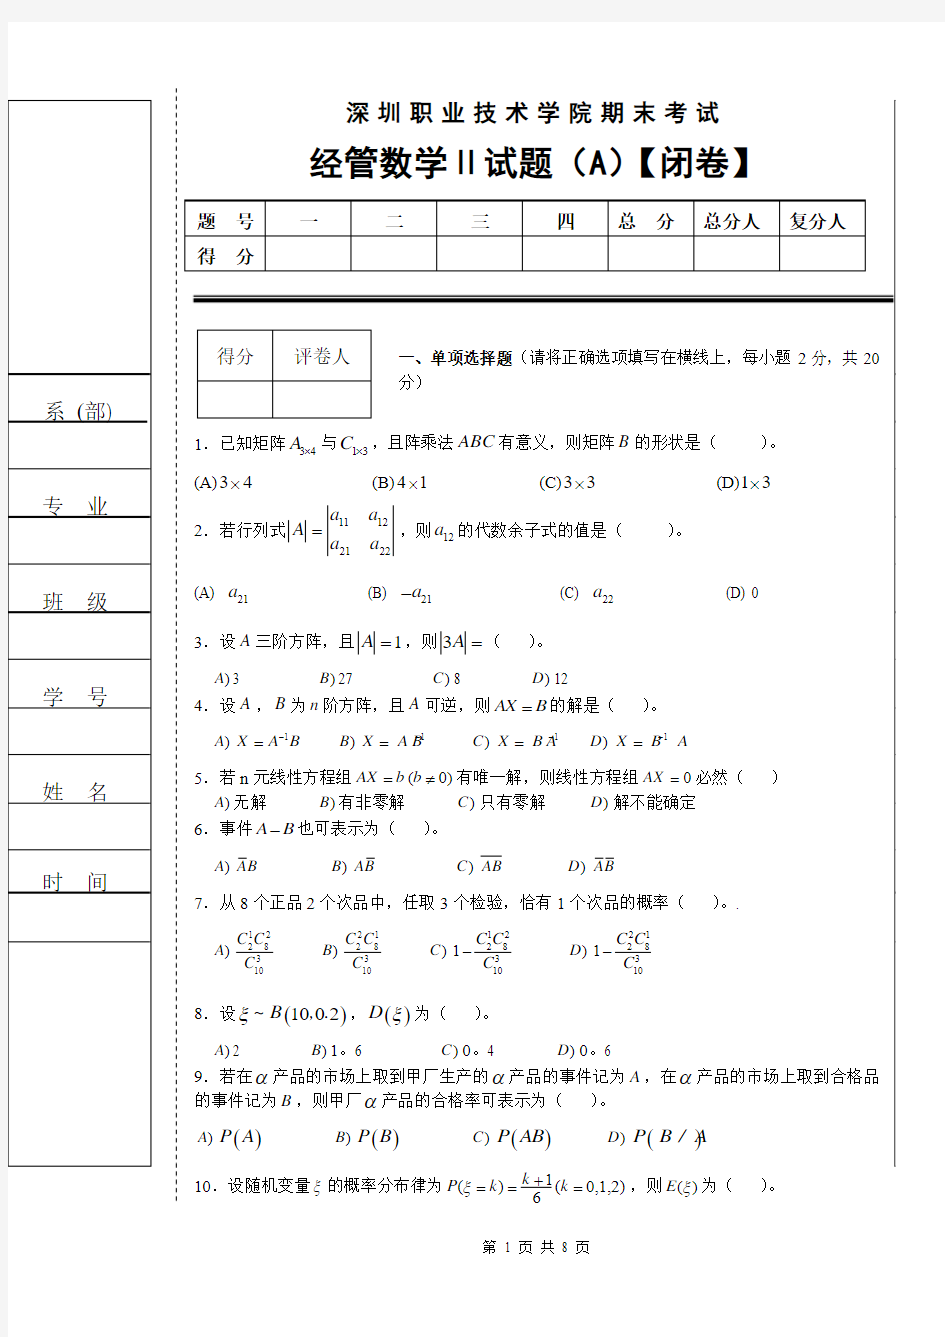 深圳职业技术学院期末考试